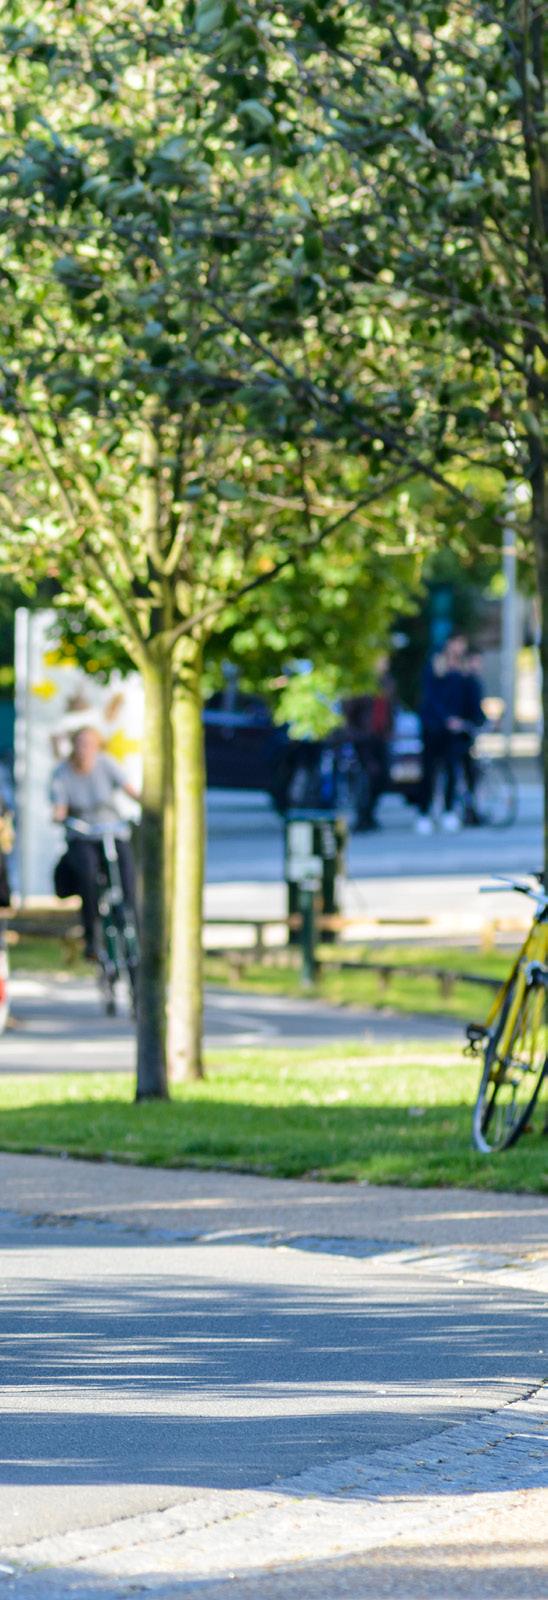 Et konkurrencedygtigt alternativ Ambitionen med Supercykelstierne er at gøre cyklen til et seriøst transportalternativ på strækninger over fem kilometer for endnu flere borgere.